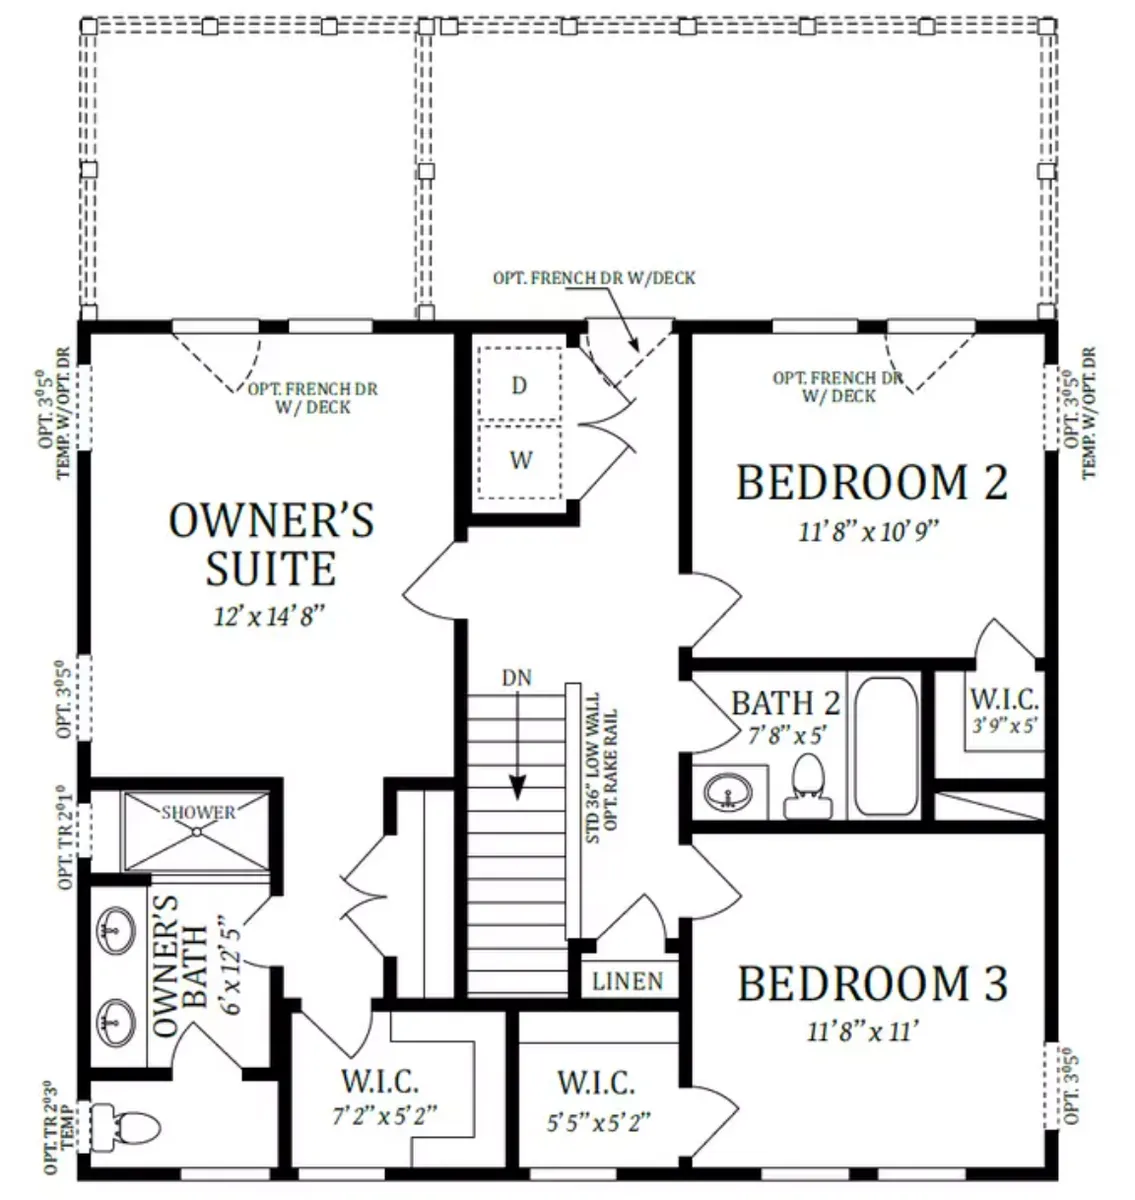 Second Floor - Plan 2